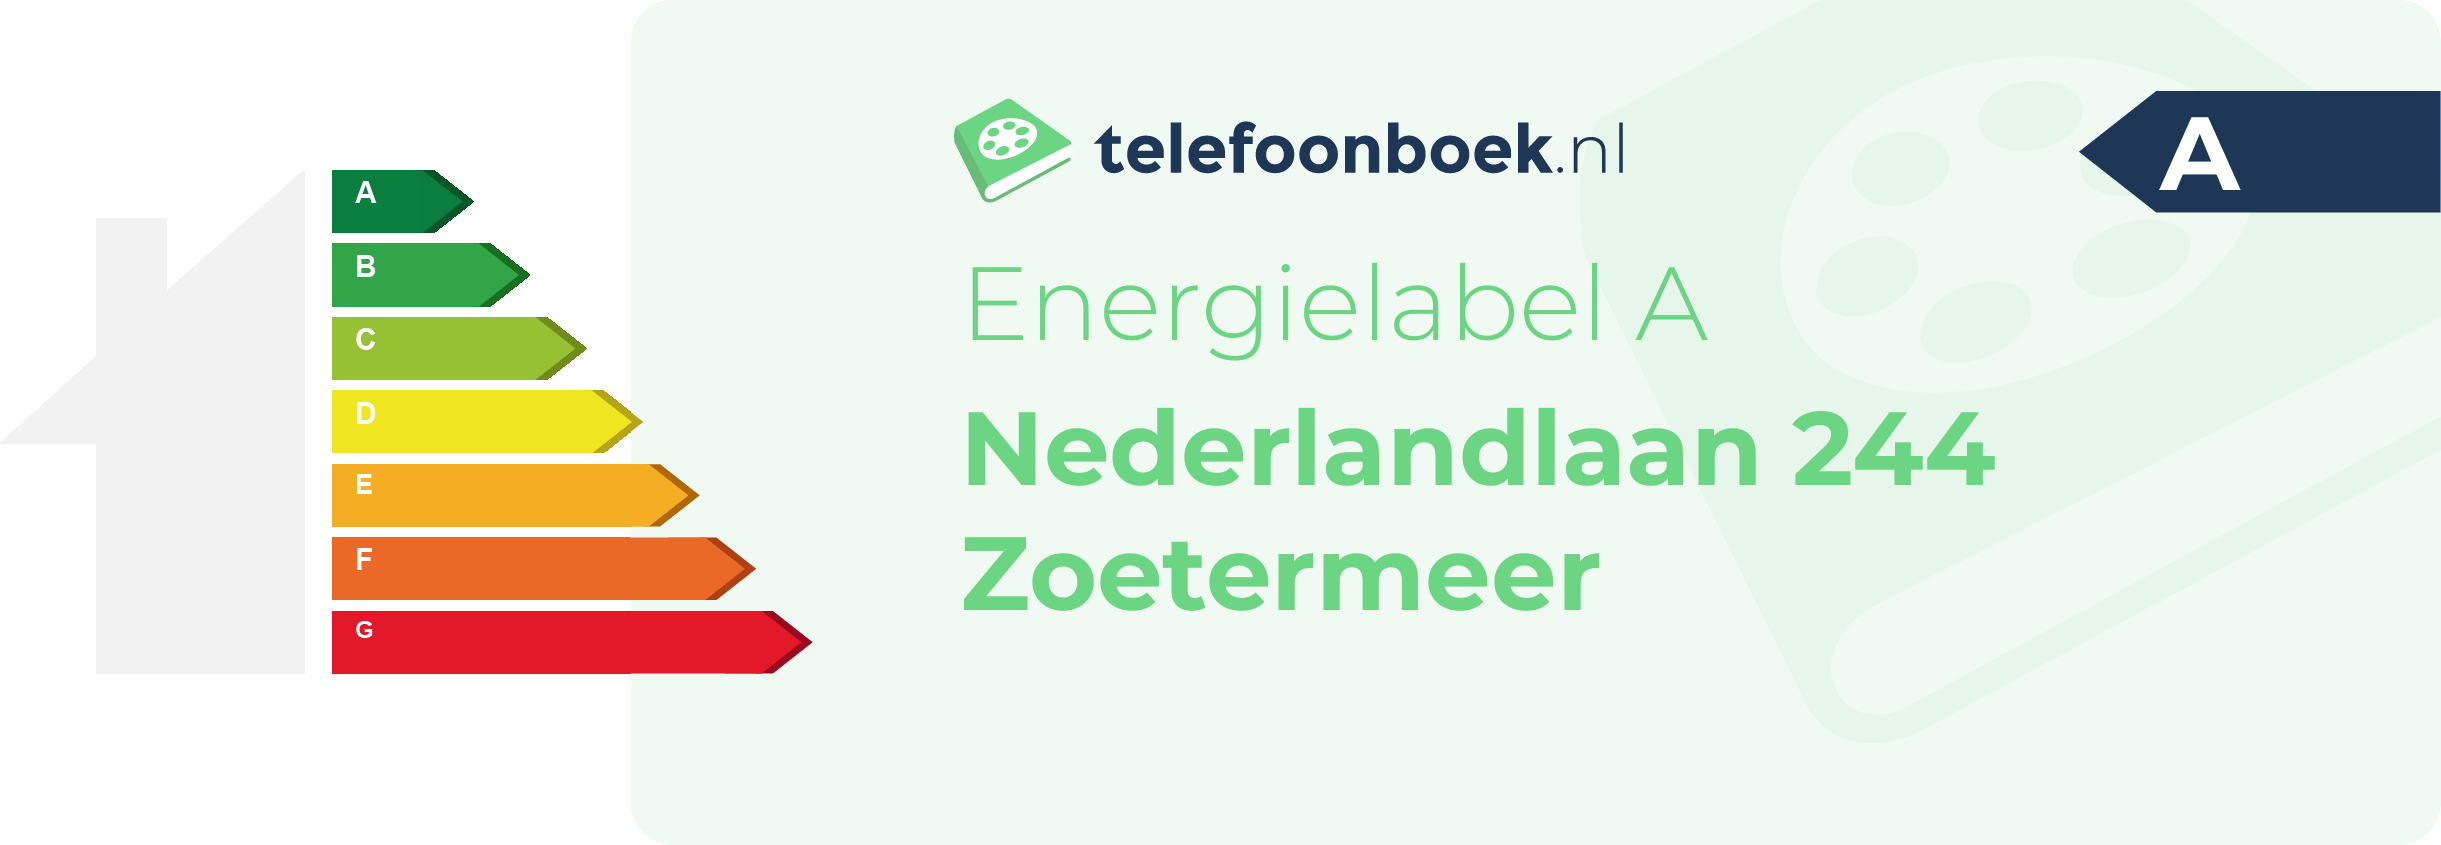 Energielabel Nederlandlaan 244 Zoetermeer